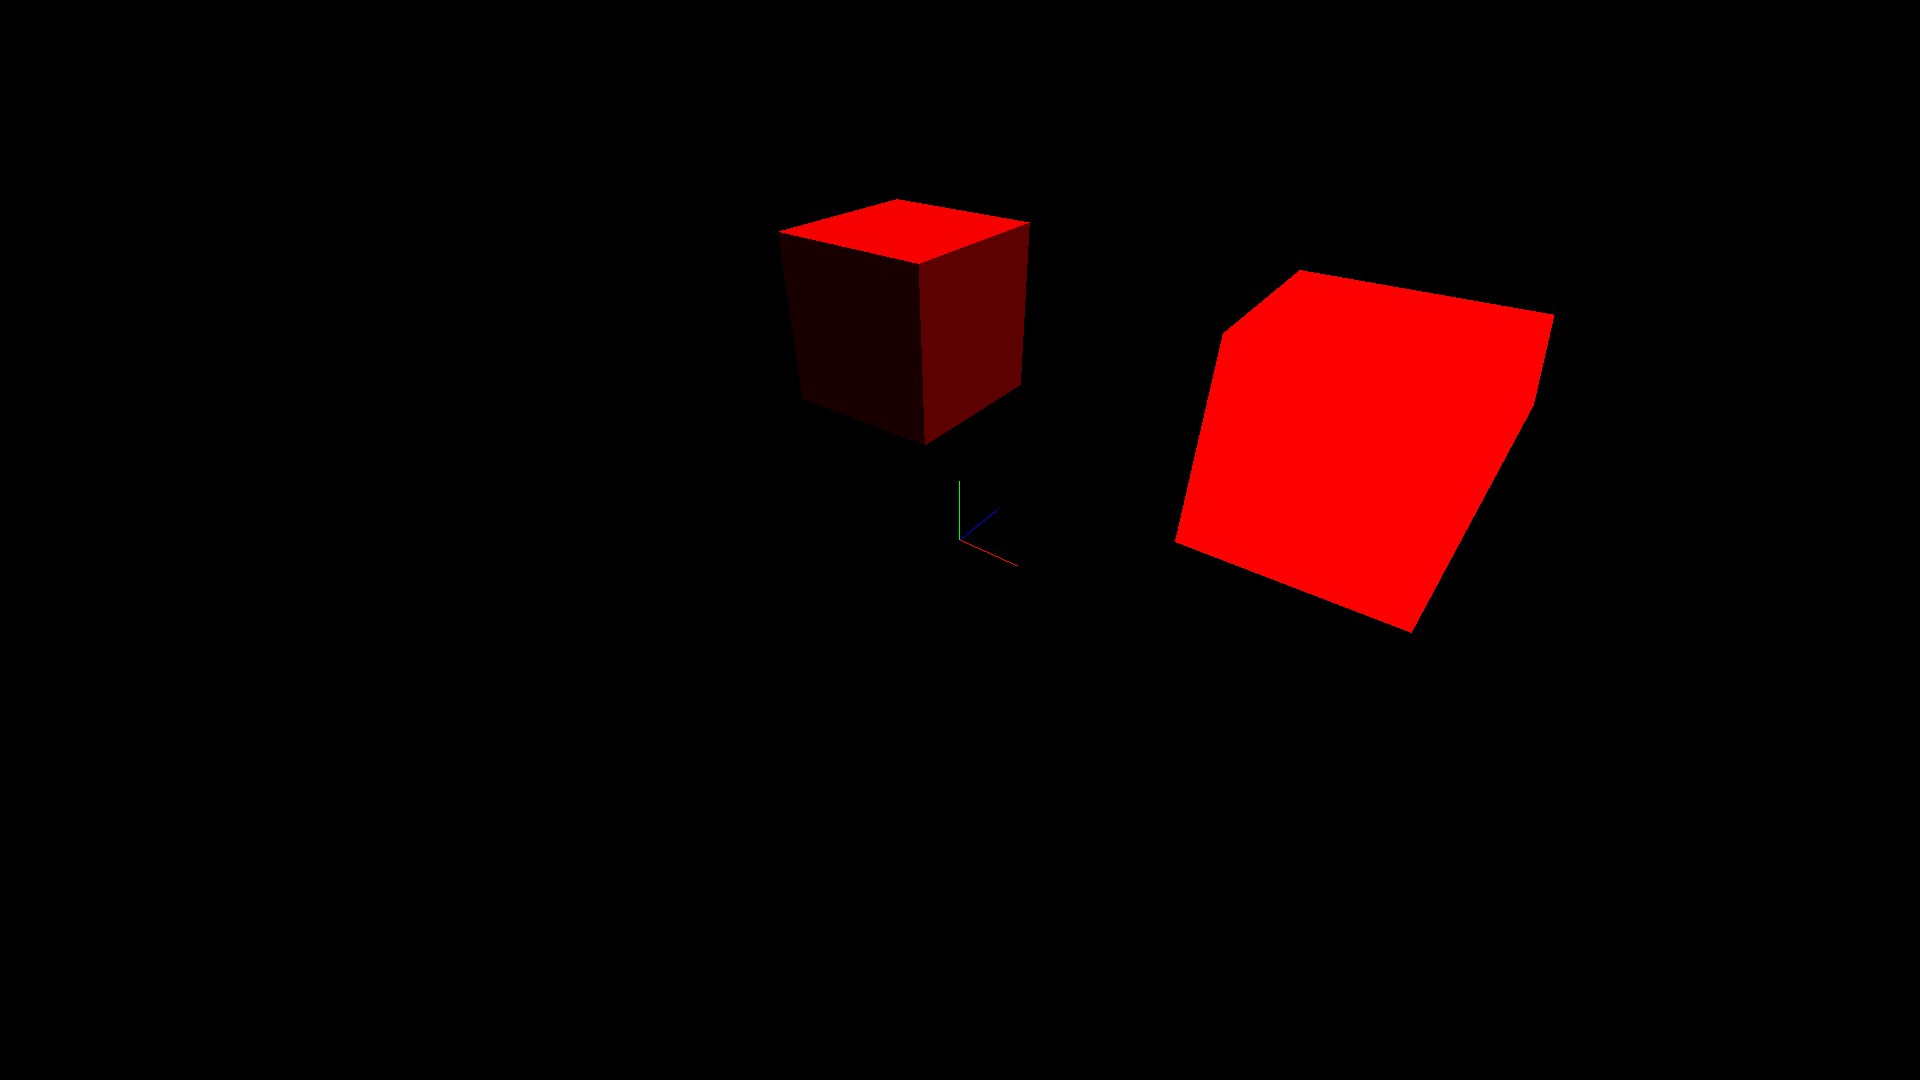 Shaded cube